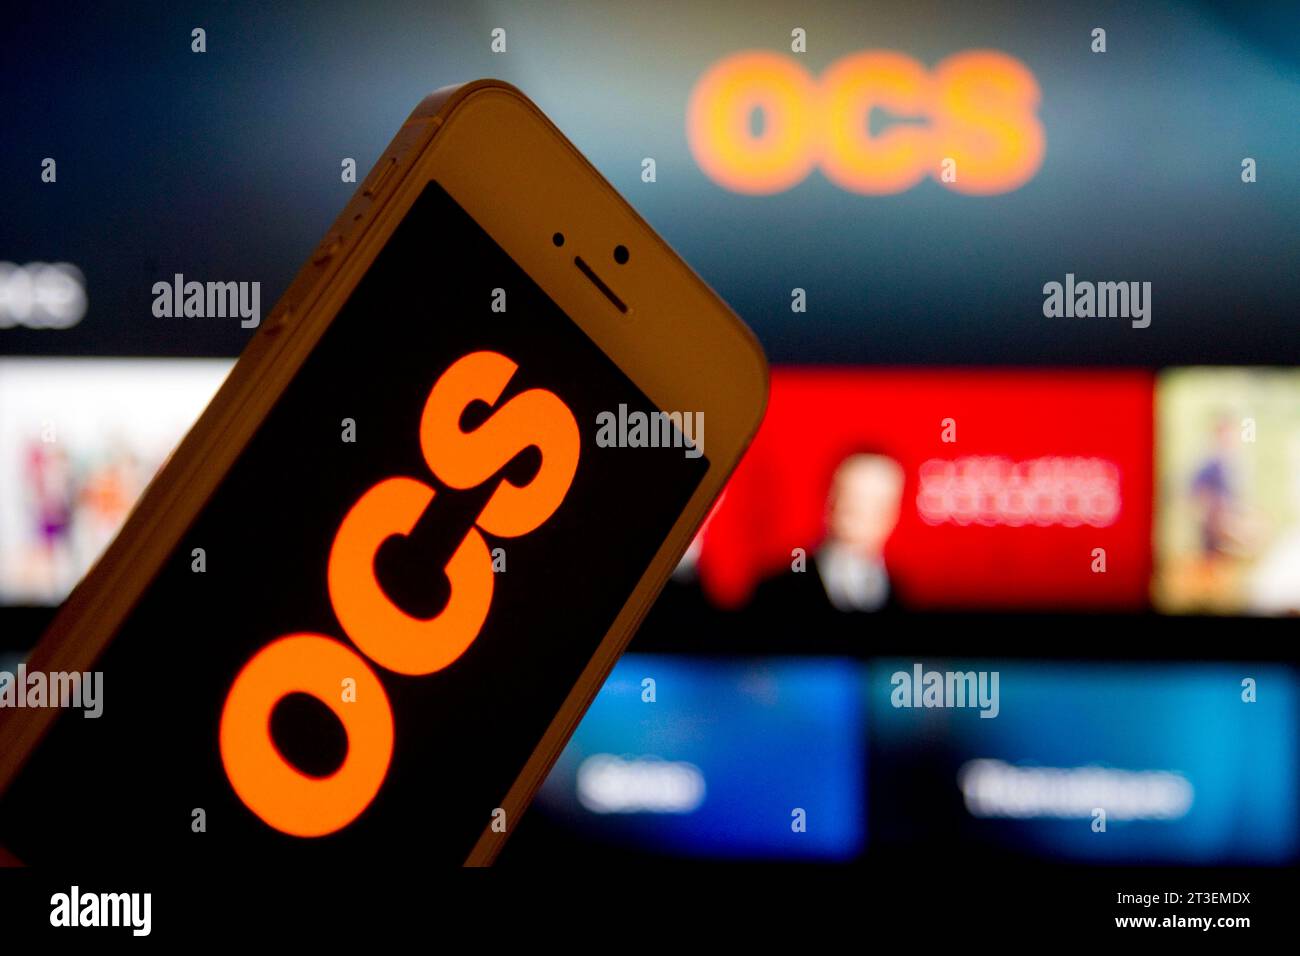 Le groupe Canal+ acquiert OCS, le bouquet de chaînes payantes de l'opérateur de télécommunications Orange. Illustration OCS, smartphone avec le logo OCS et le O Banque D'Images